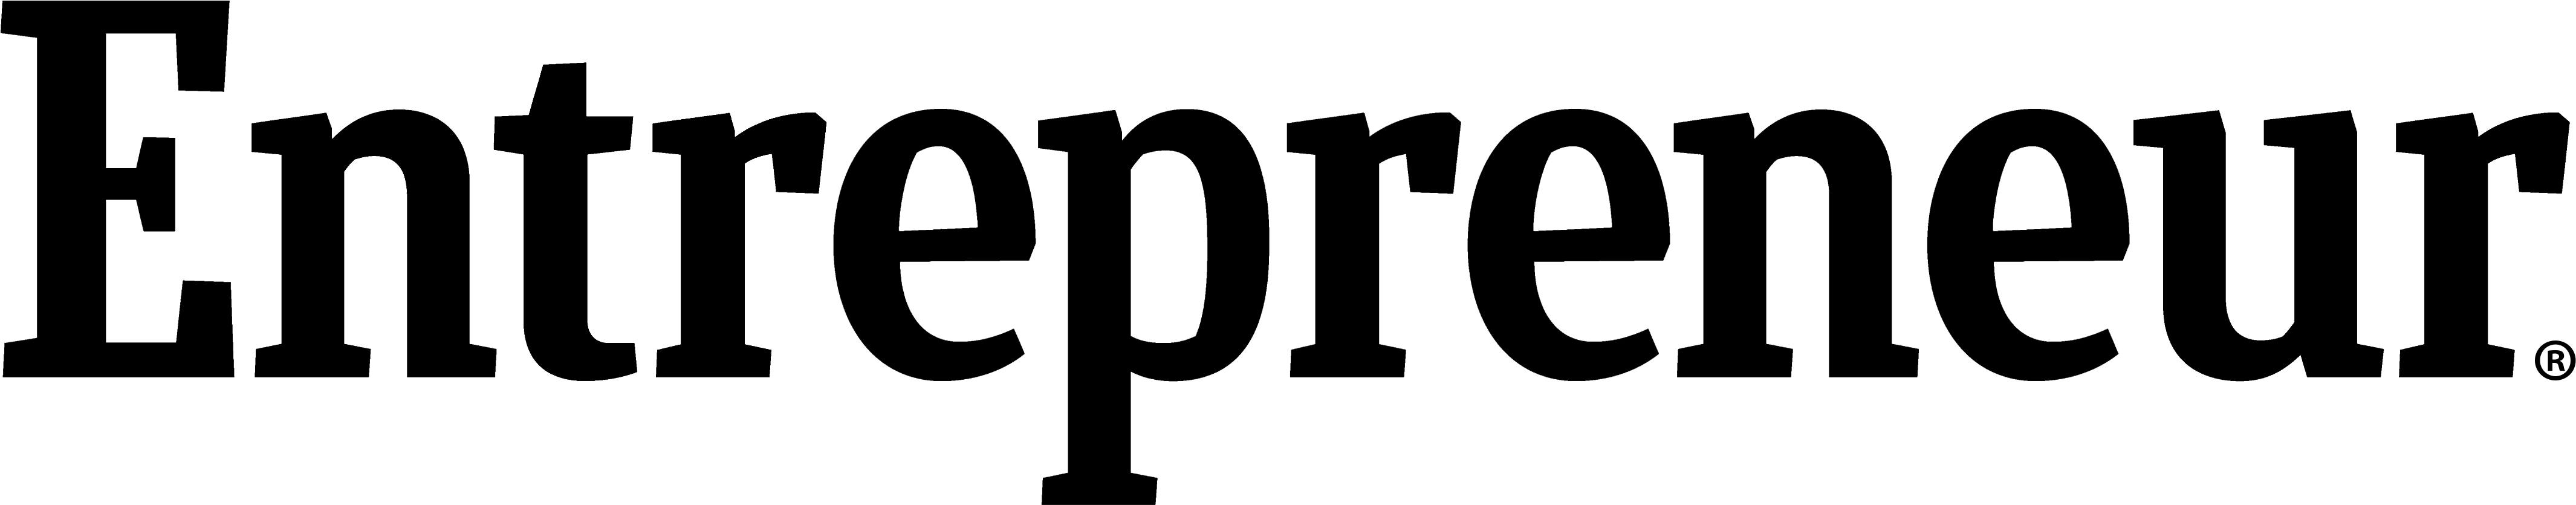 Entrepreneur Logo - Entrepreneur Gray Logo (4400x1200)